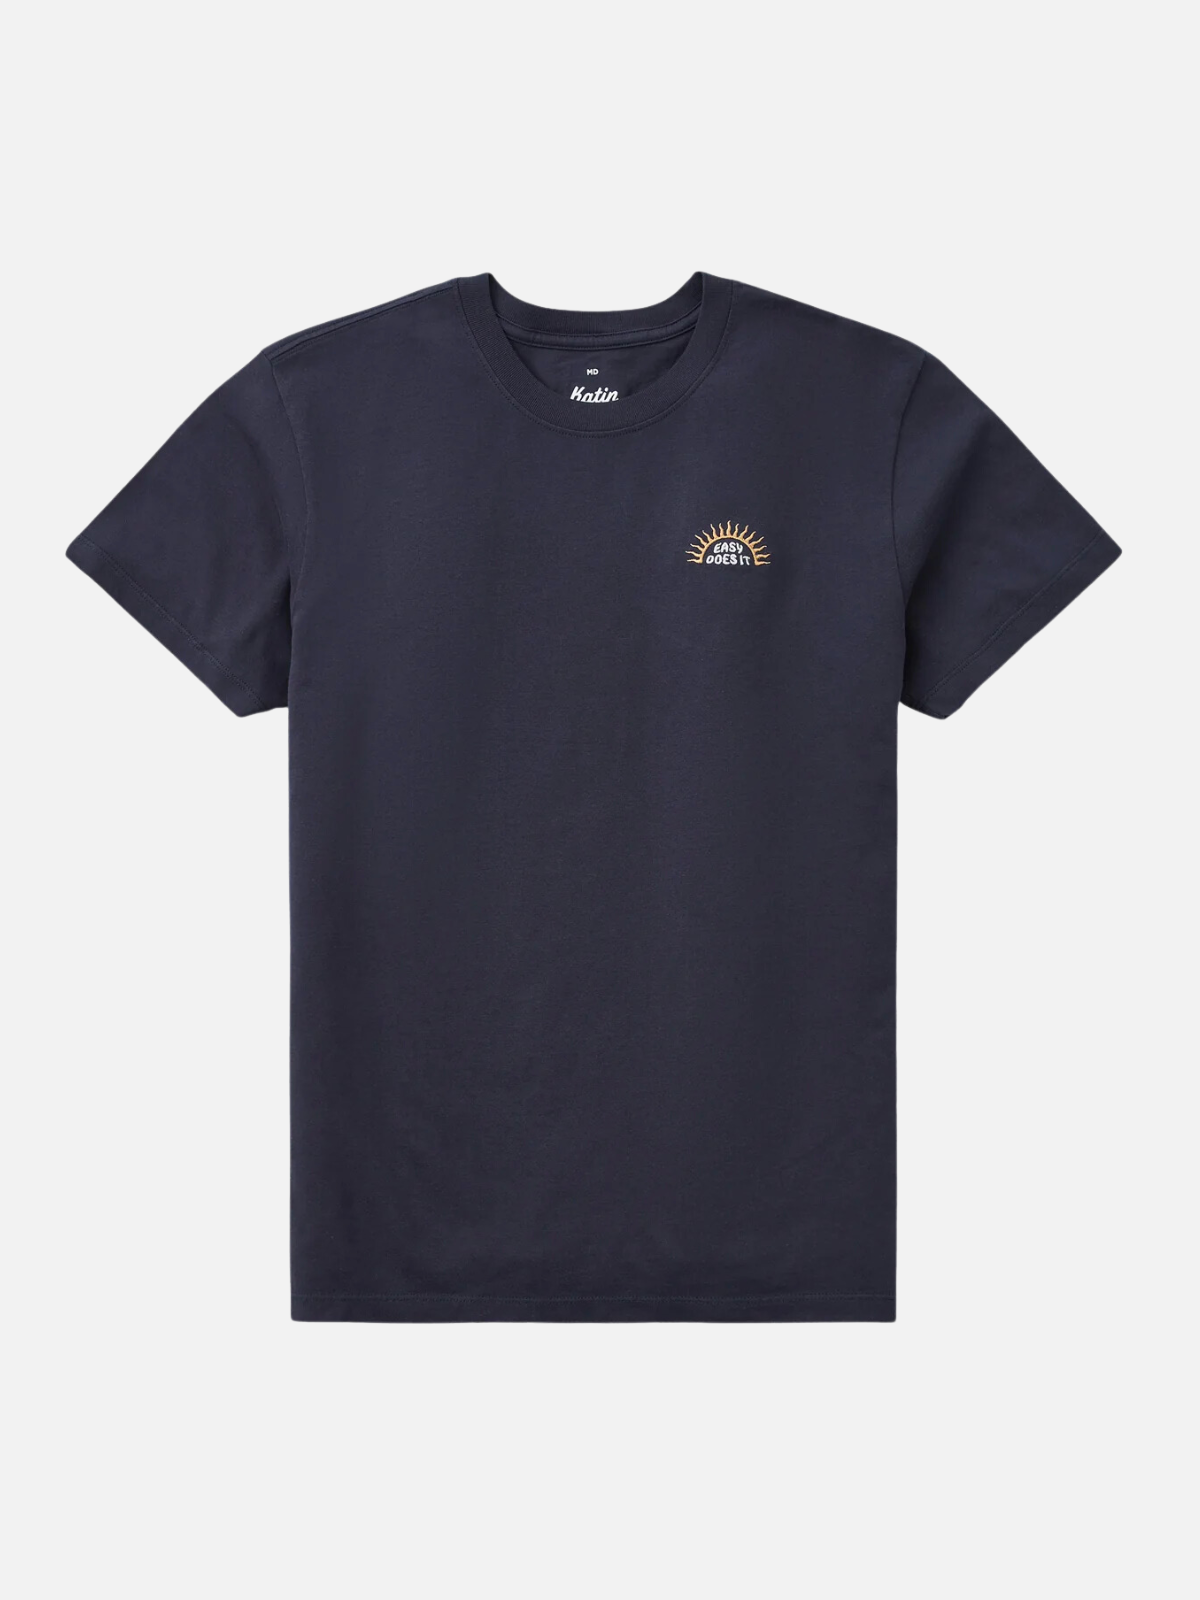 Katin Rise Embroidered T-Shirt Polar Navy Kempt Mens Clothing Shopping Athens GA